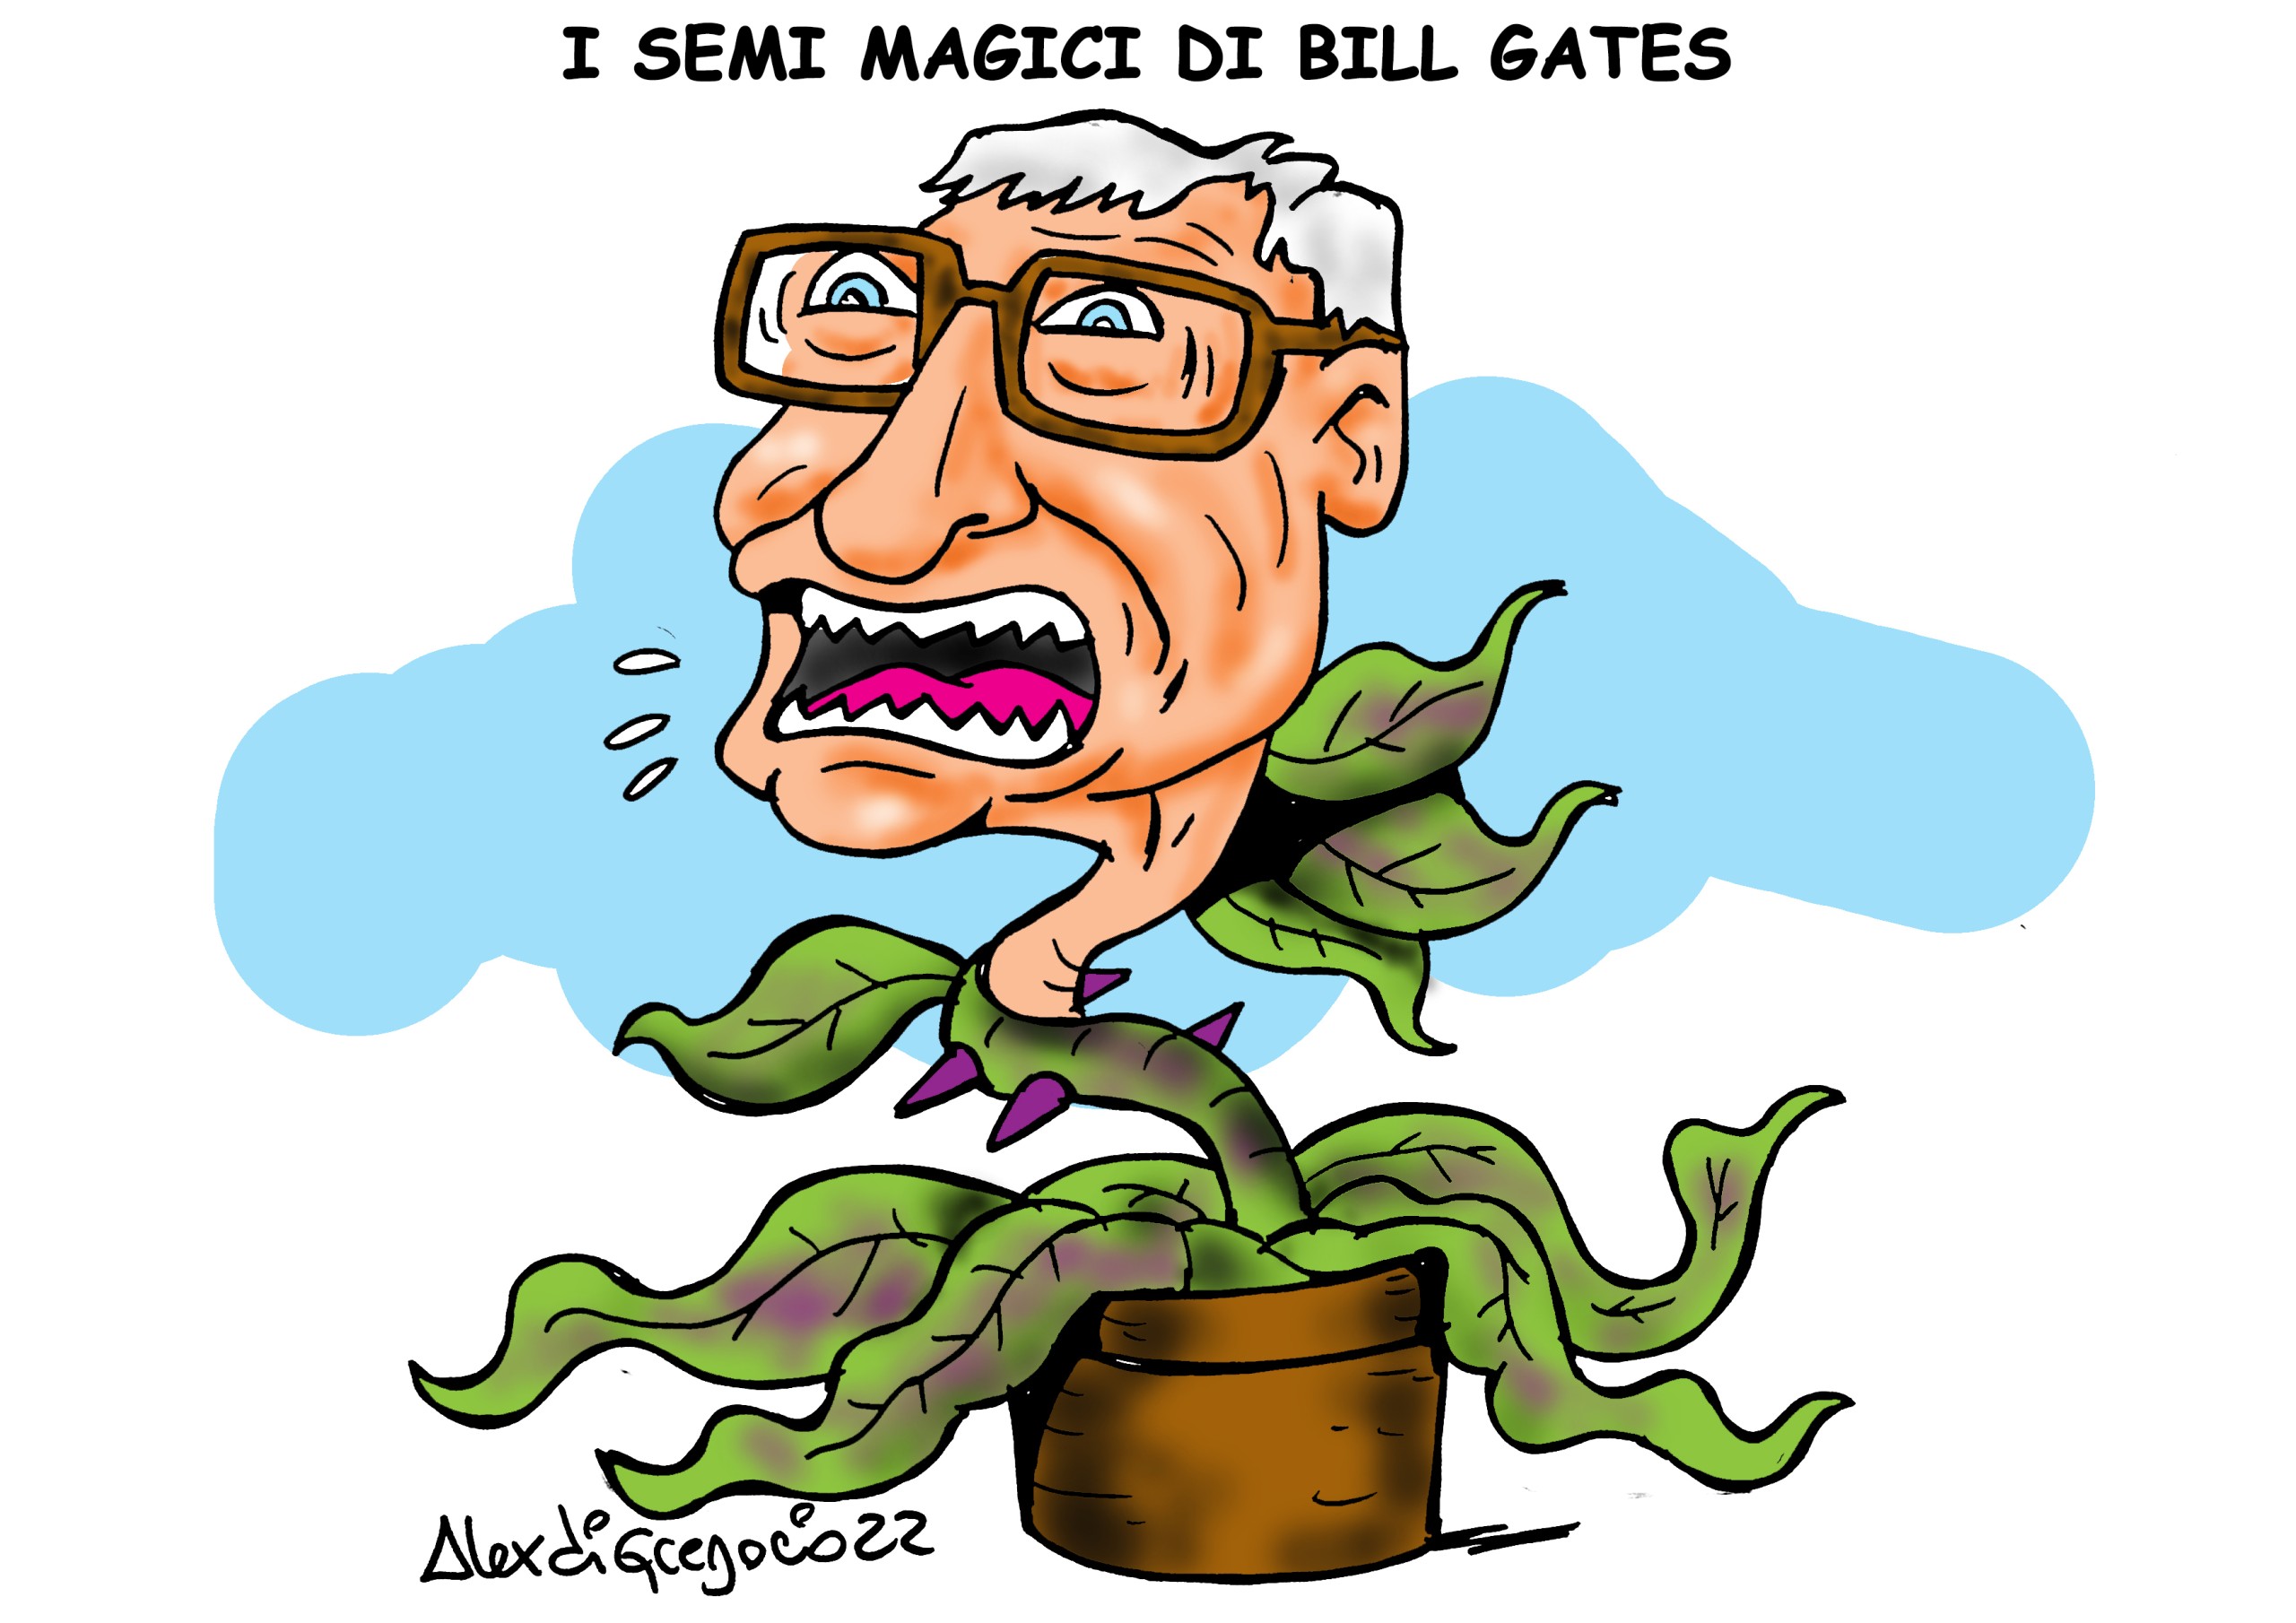 Bill Gates sta rinominando i semi geneticamente modificati come “semi magici”, affermando che sono la risposta alla fame nel mondo. Ma per Vandana Shiva, una “manipolazione rozza e fallita dei sistemi viventi non crea semi magici ma un disastro ecologico”.